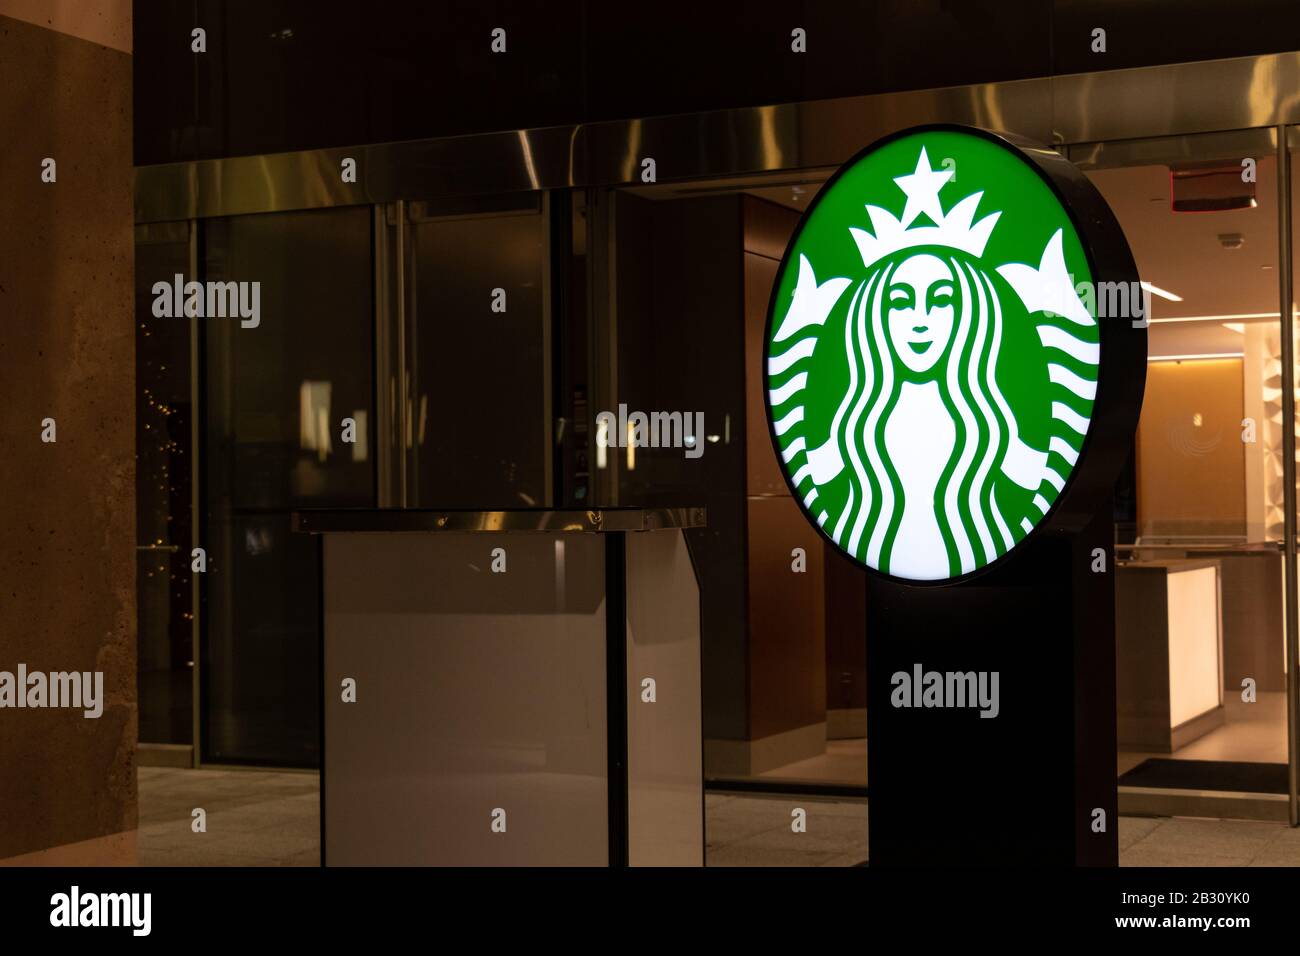 Le logo Starbucks Coffee s'est éclairé la nuit devant un café à l'intérieur d'un hôtel. Banque D'Images